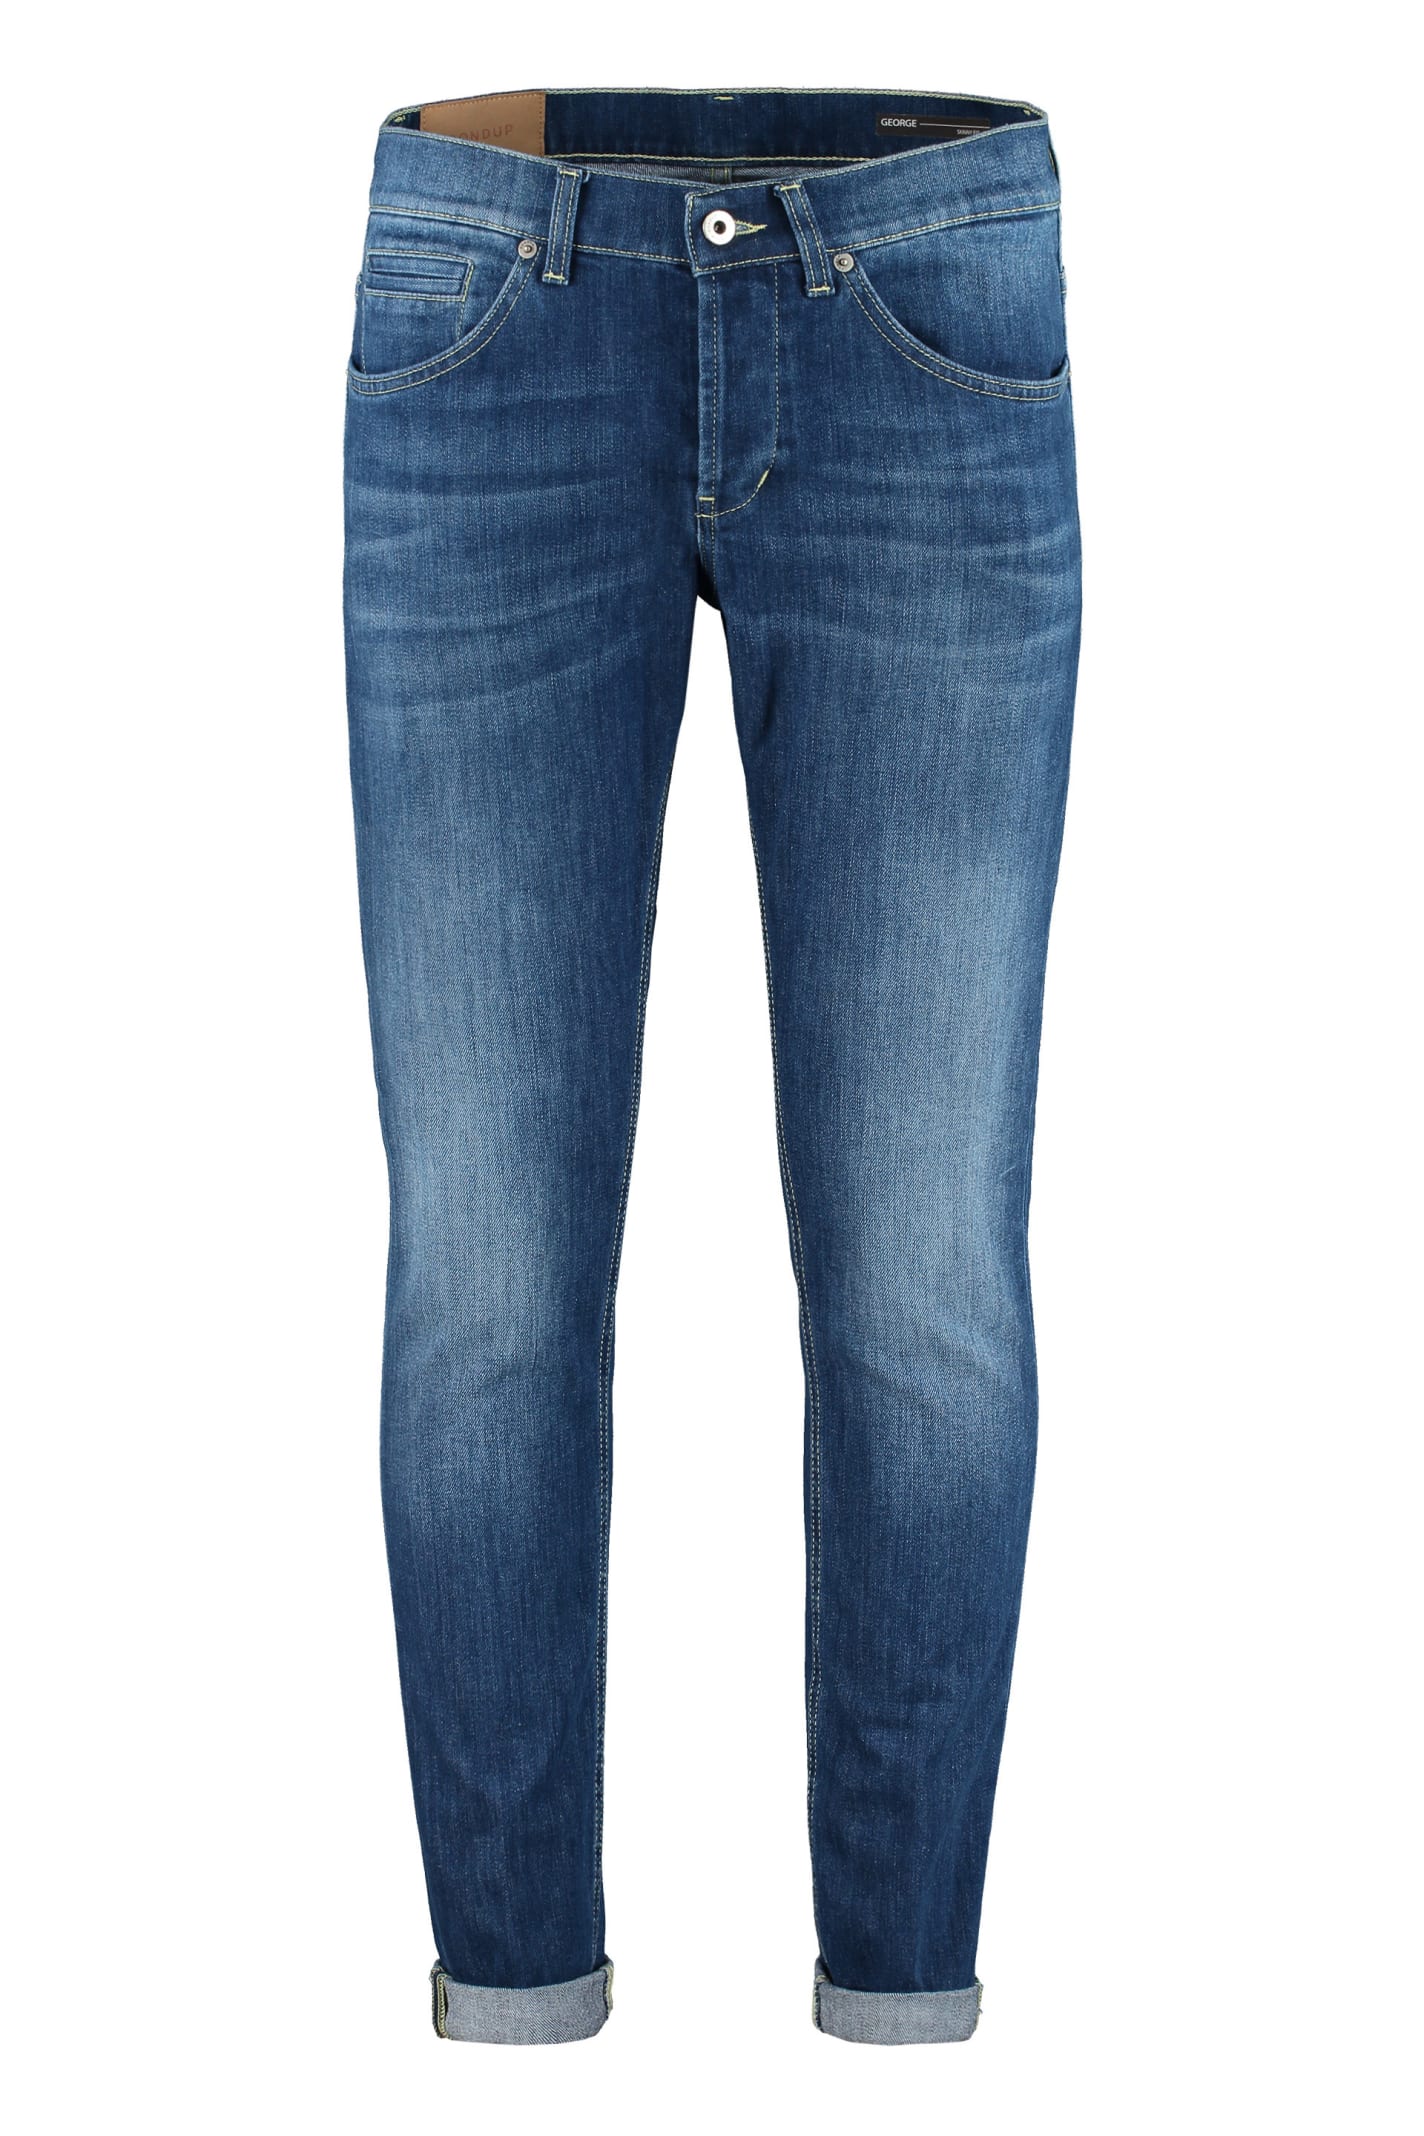 Dondup George 5-pocket Jeans